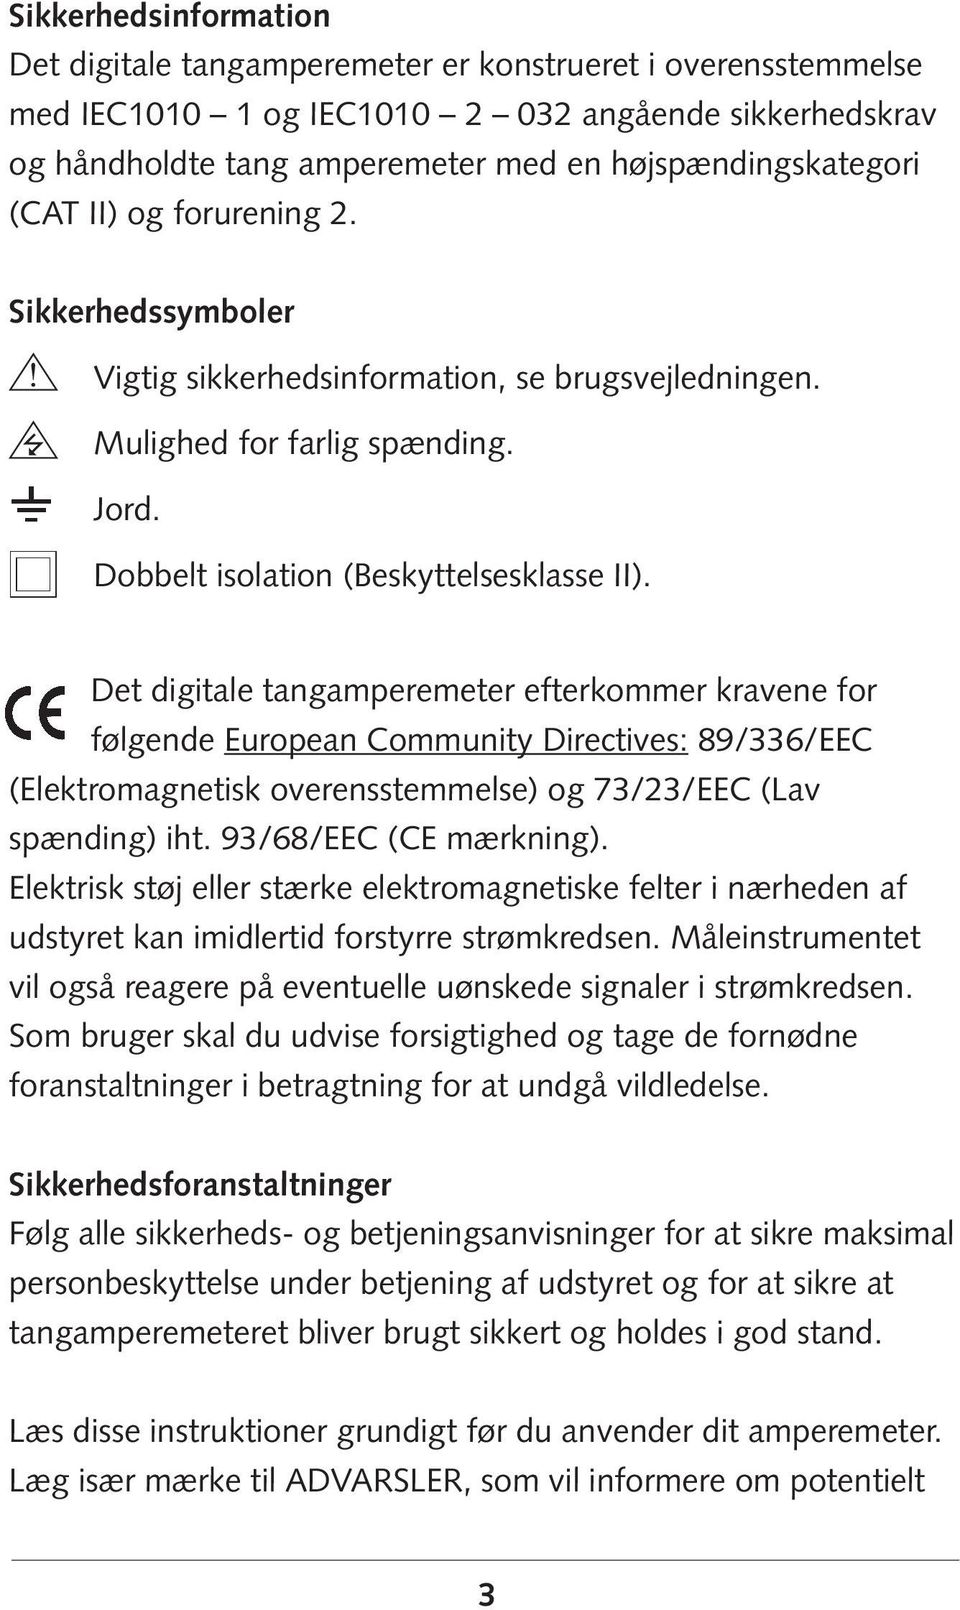 Det digitale tangamperemeter efterkommer kravene for følgende European Community Directives: 89/336/EEC (Elektromagnetisk overensstemmelse) og 73/23/EEC (Lav spænding) iht. 93/68/EEC (CE mærkning).